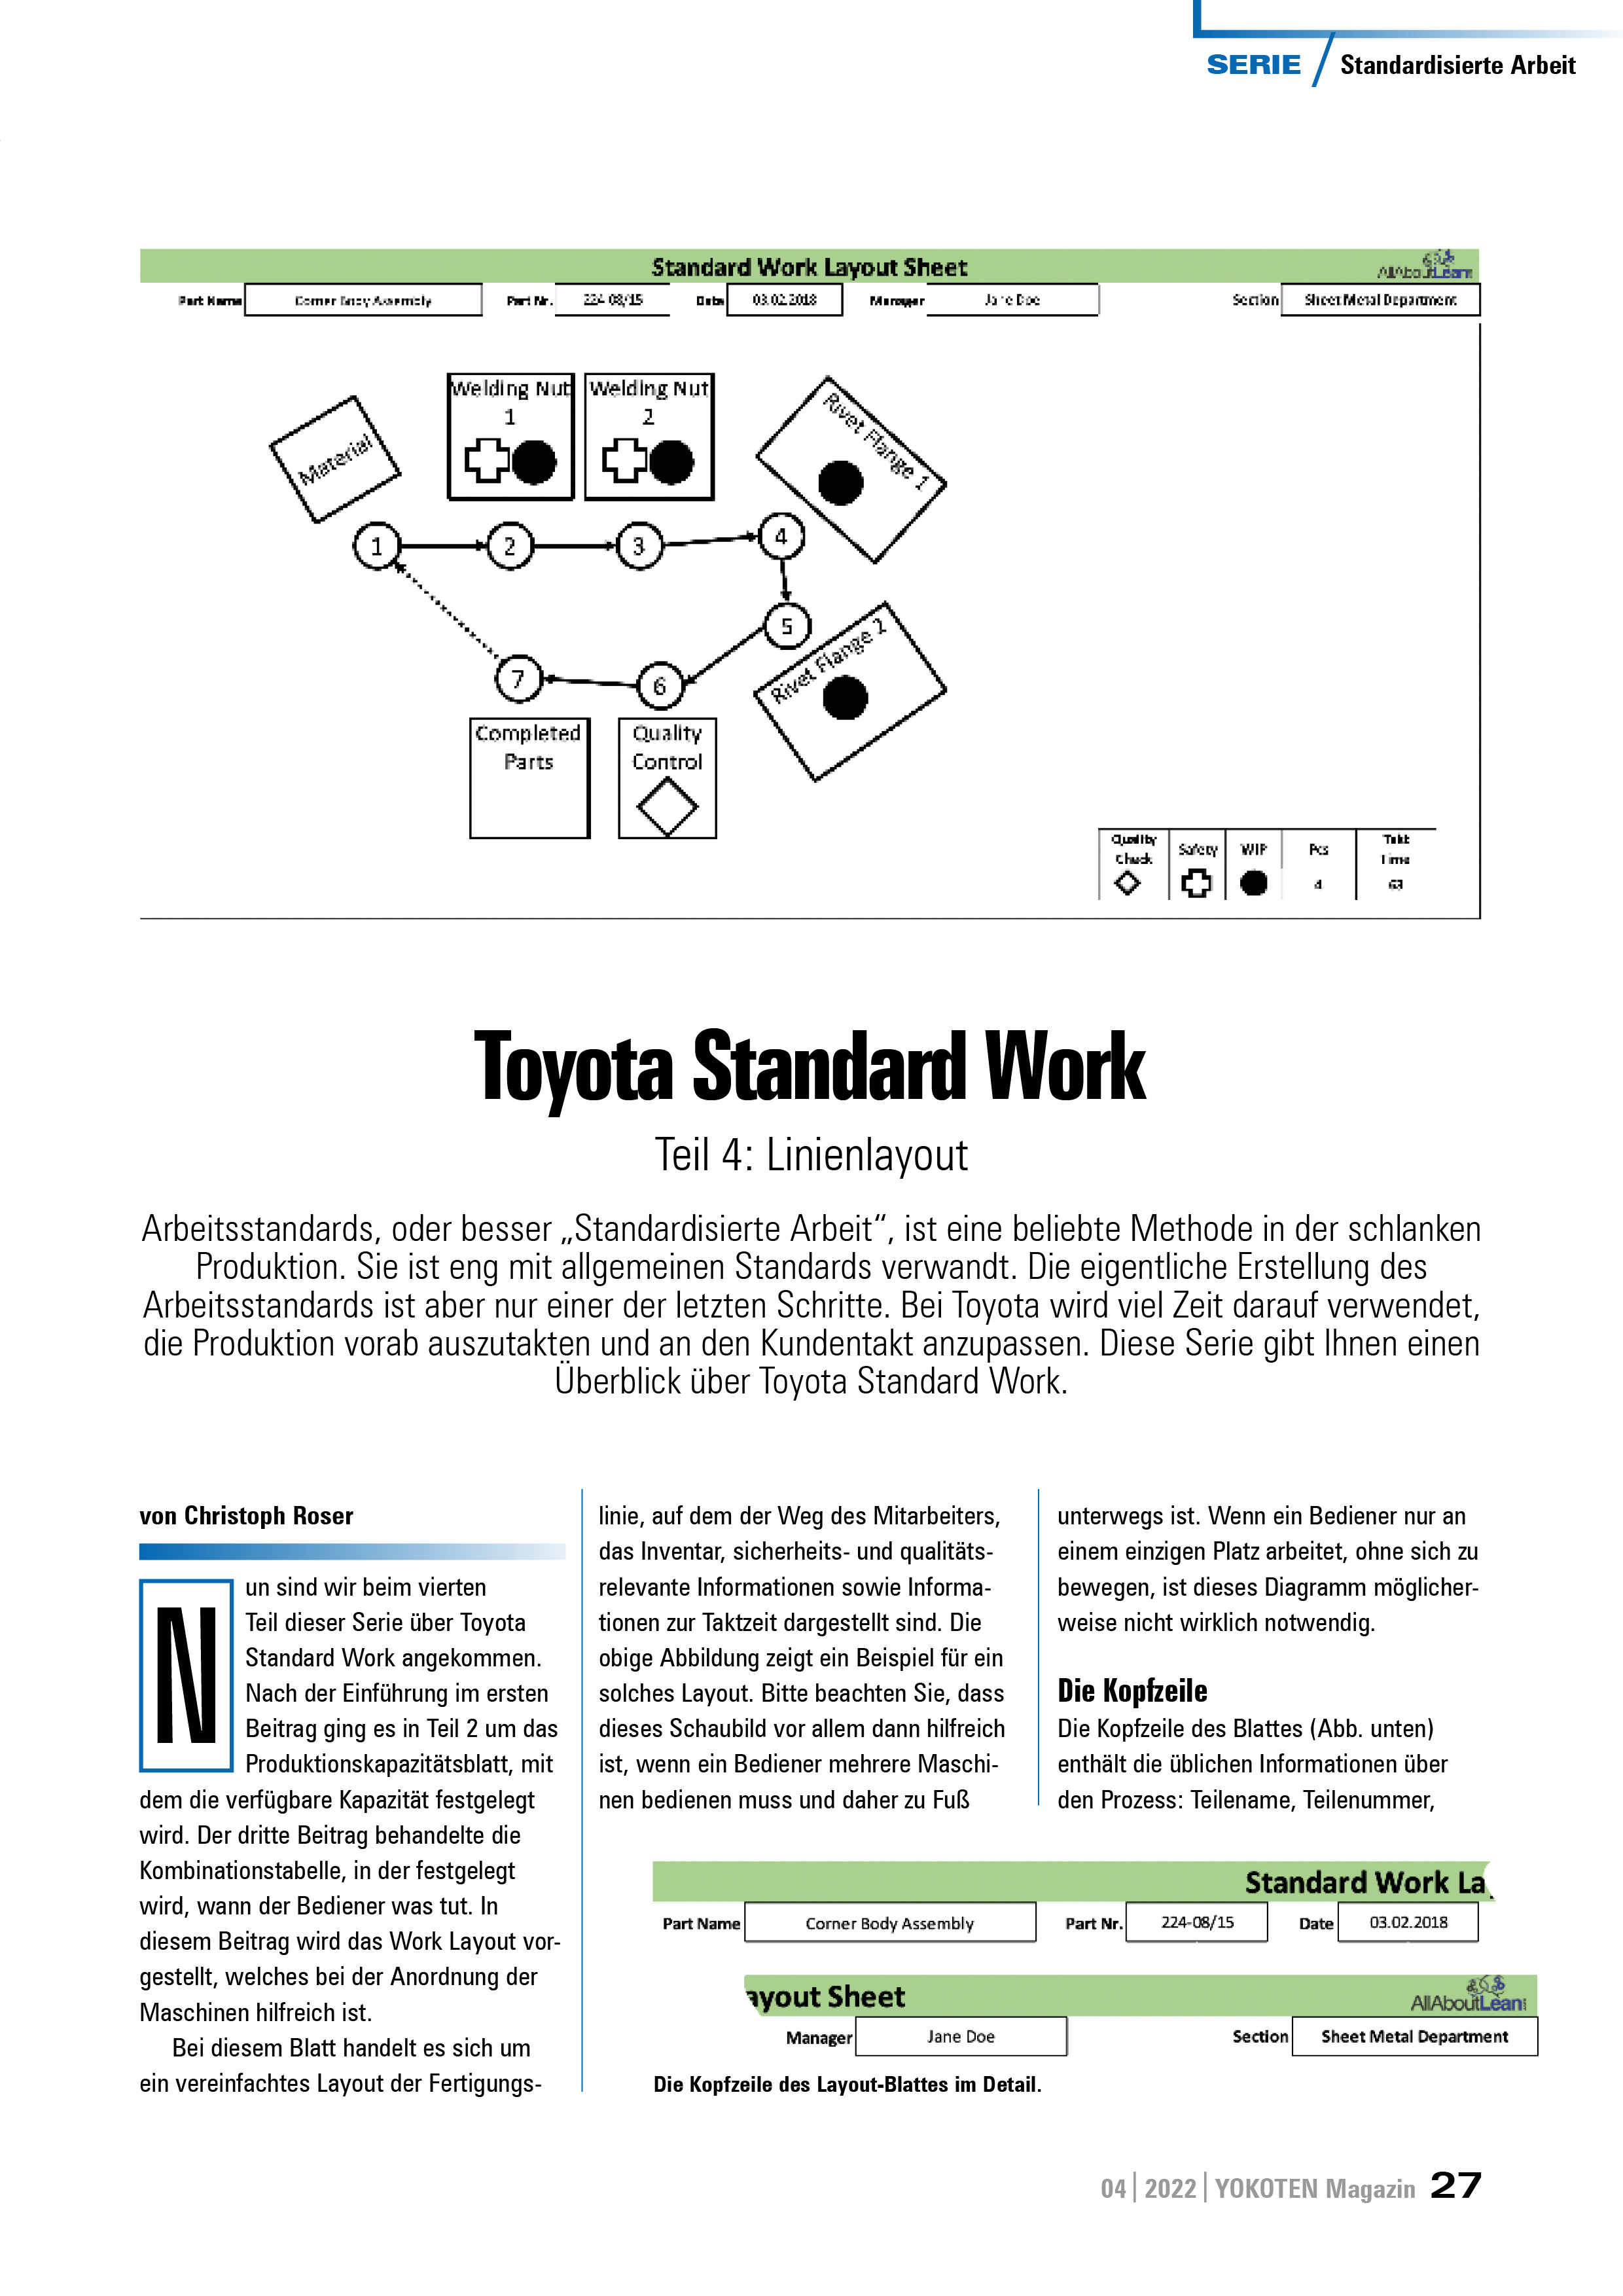 Toyota Standard Work - Teil 4 - Artikel aus Fachmagazin YOKOTEN 2022-04